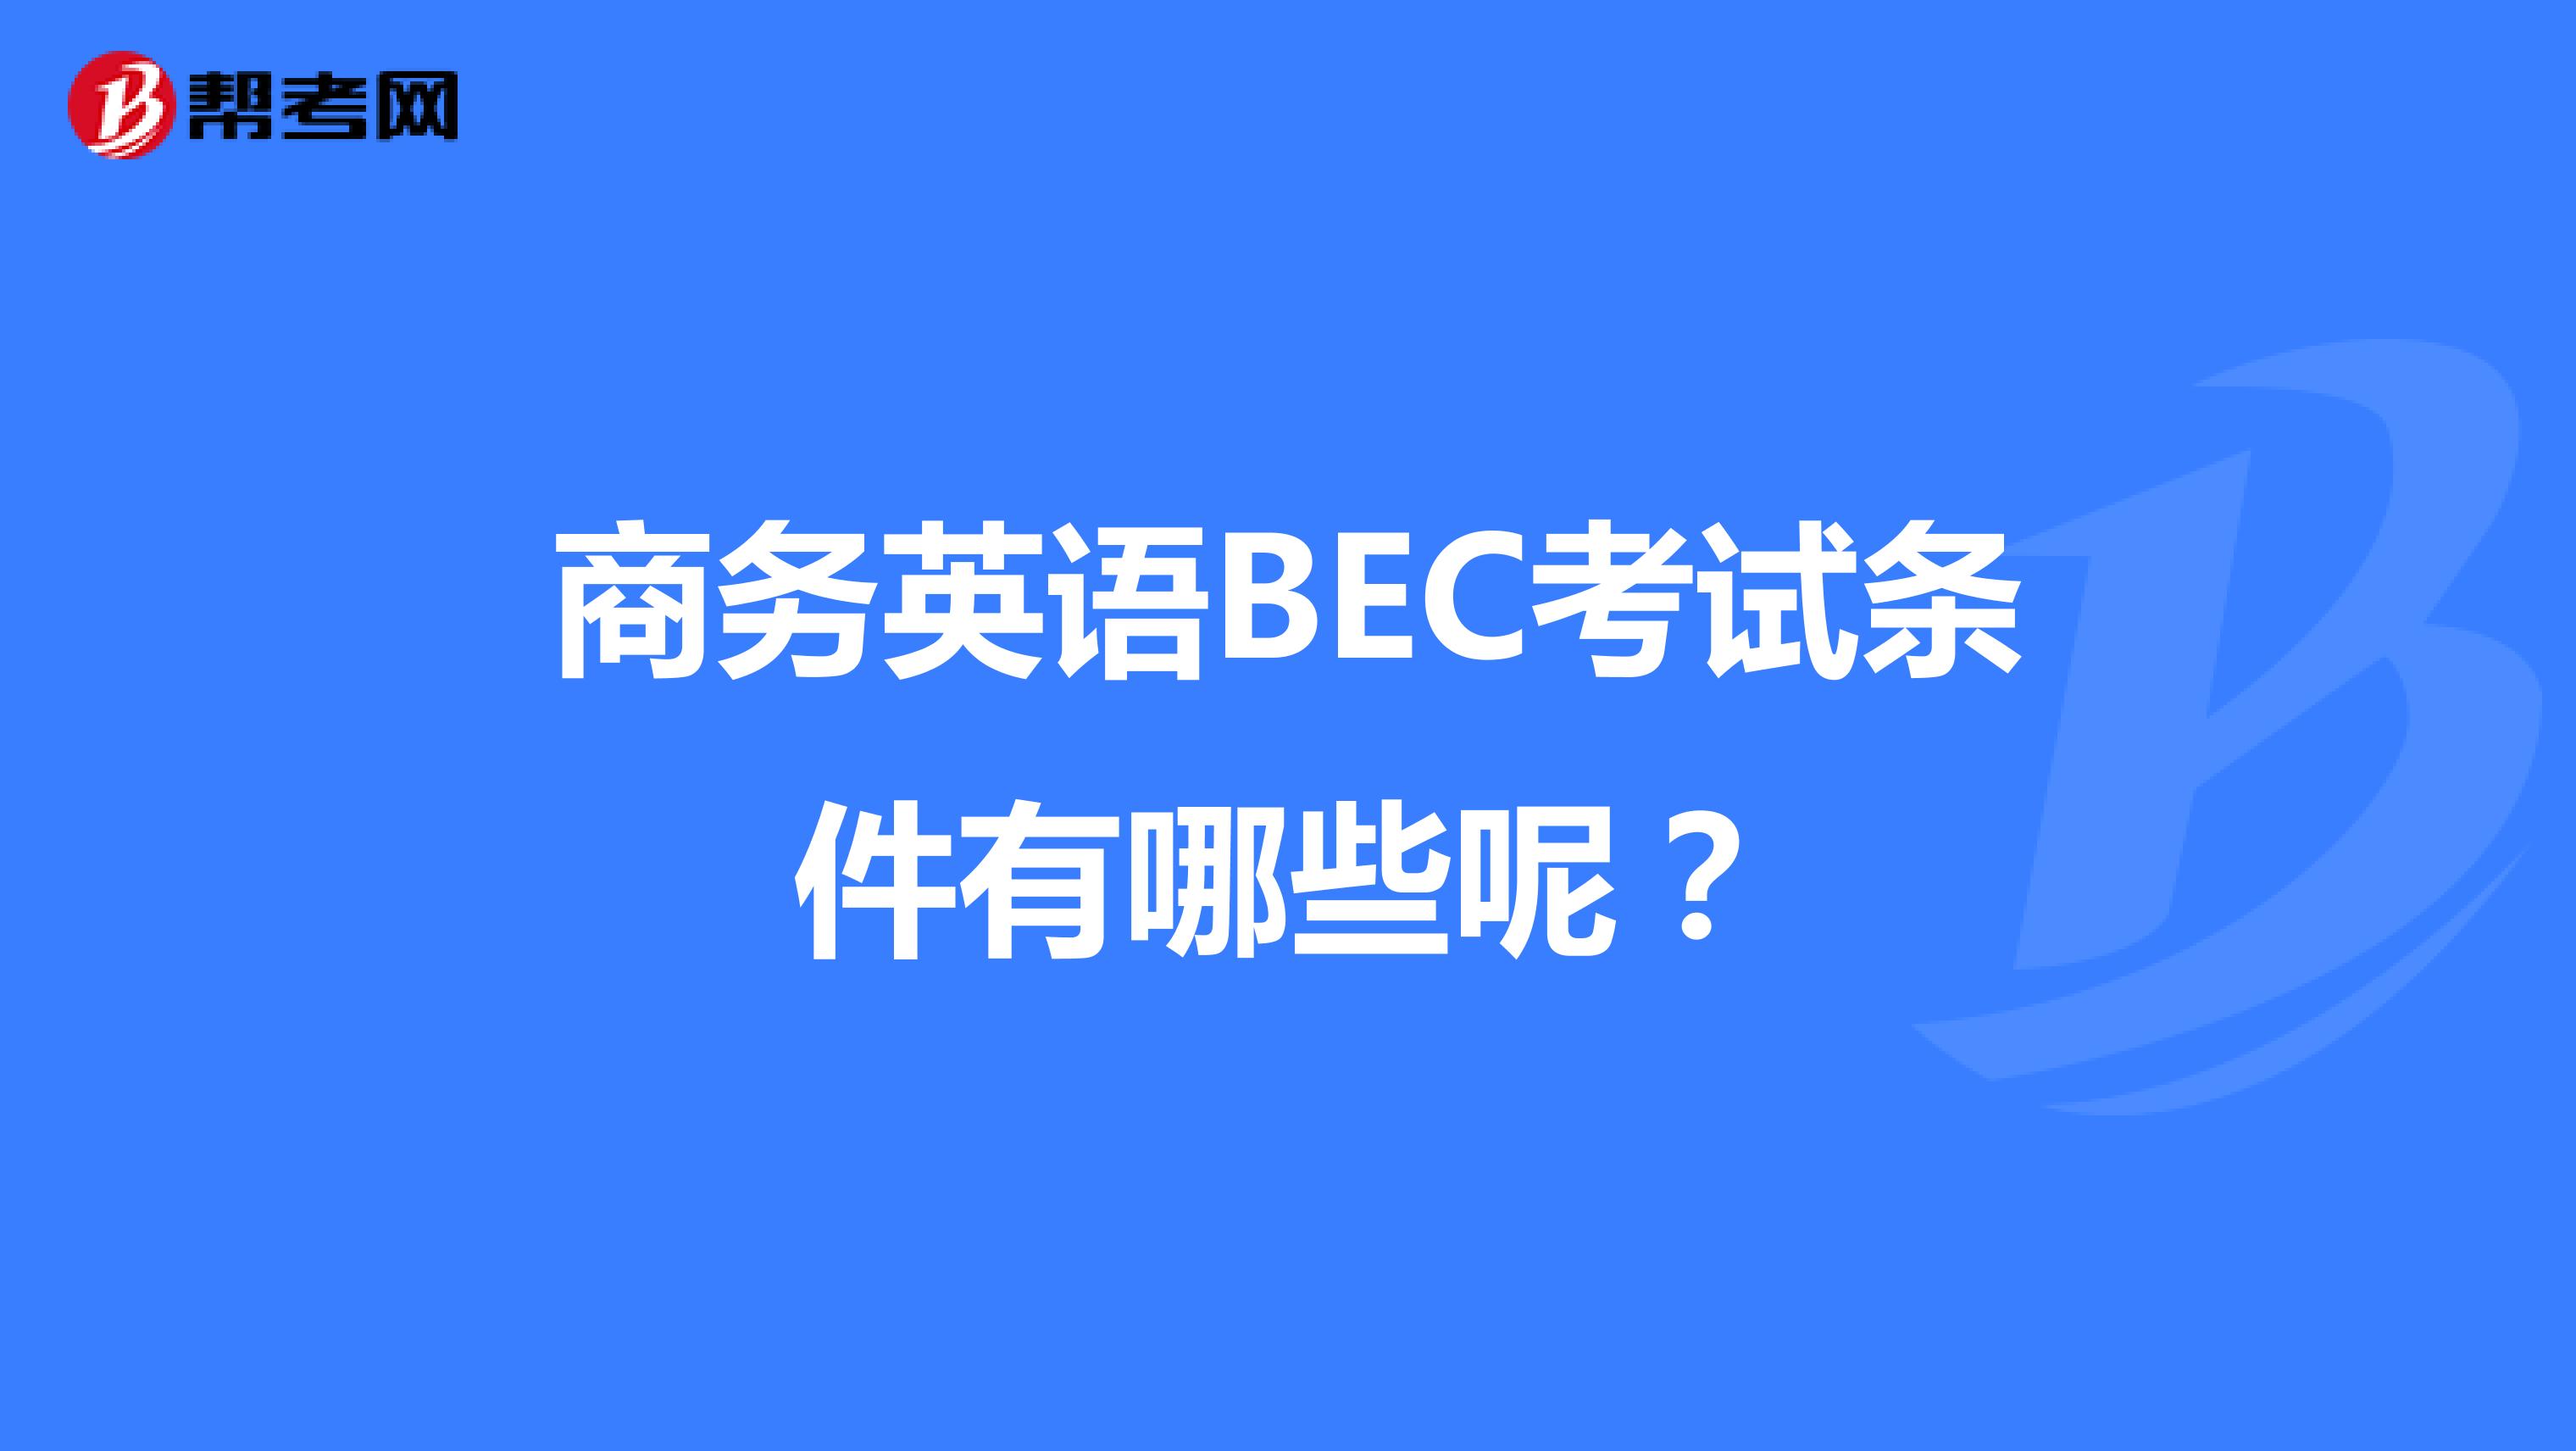 商务英语BEC考试条件有哪些呢？